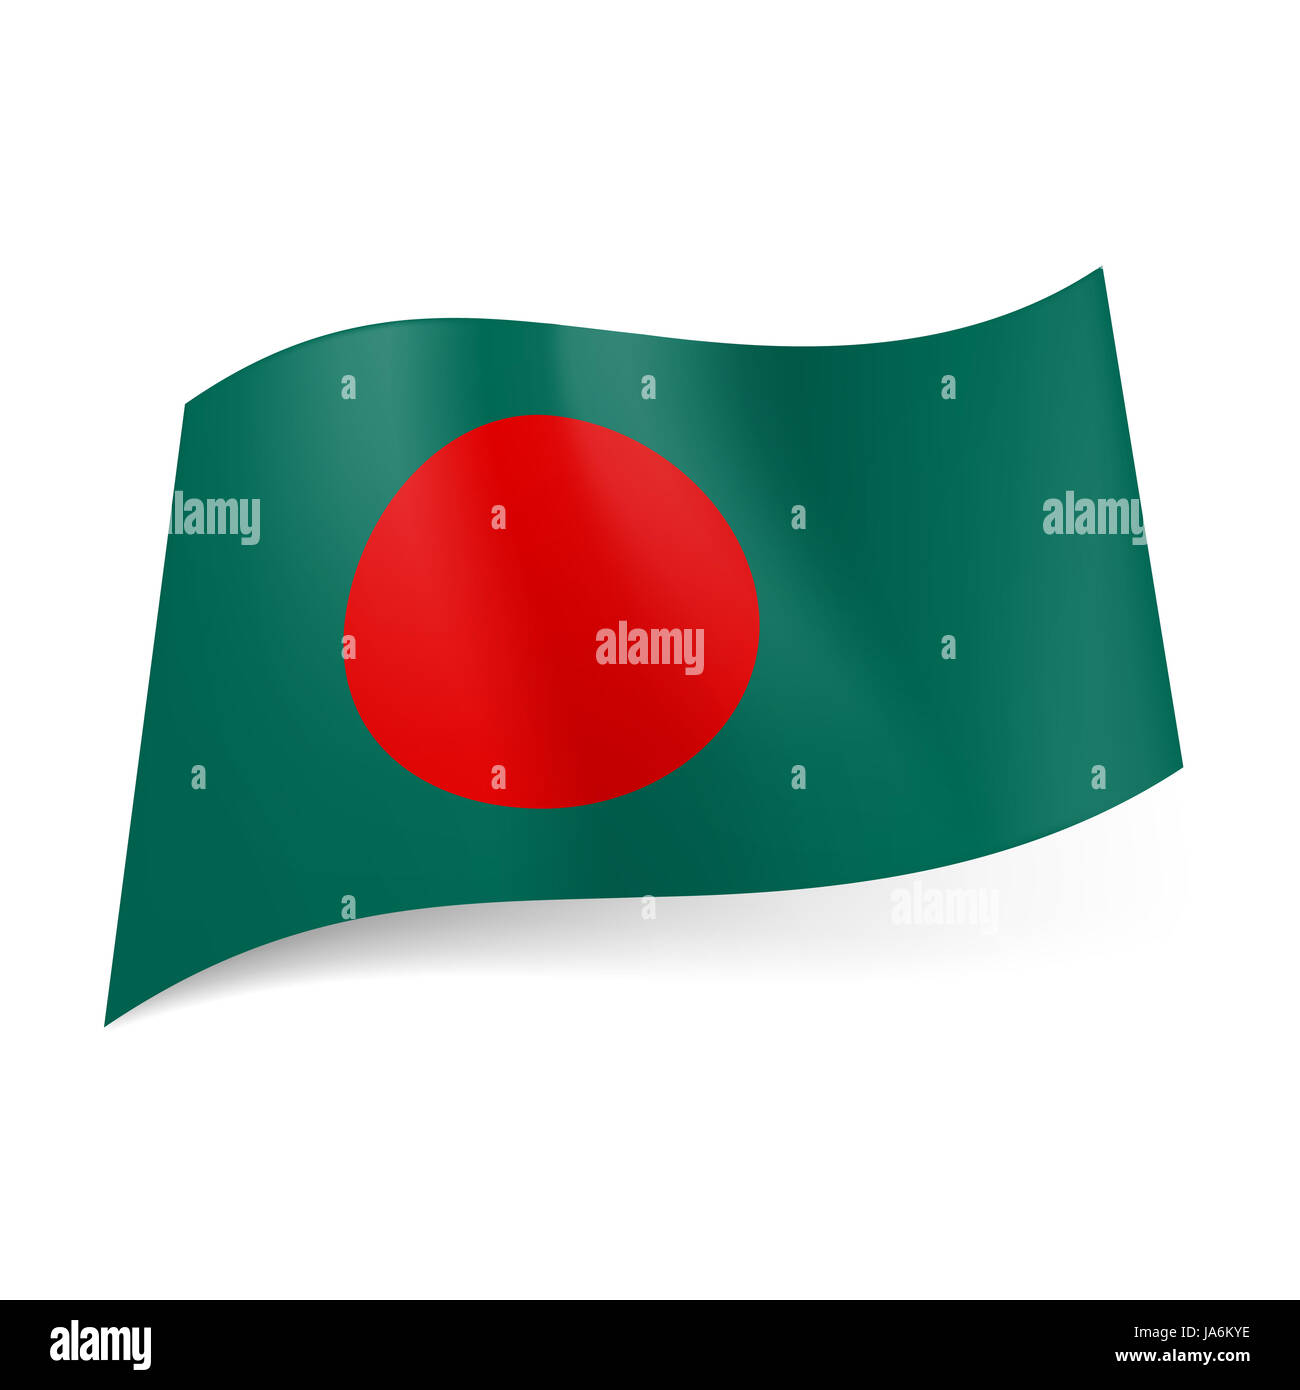 Cờ đỏ tròn đặc trưng của Bangladesh là biểu tượng được ái quốc dân mến chuộng. Hãy tới ngay để chiêm ngưỡng hình ảnh đầy tự hào của quốc gia Bangladesh trong cờ đỏ tròn đặc biệt này.